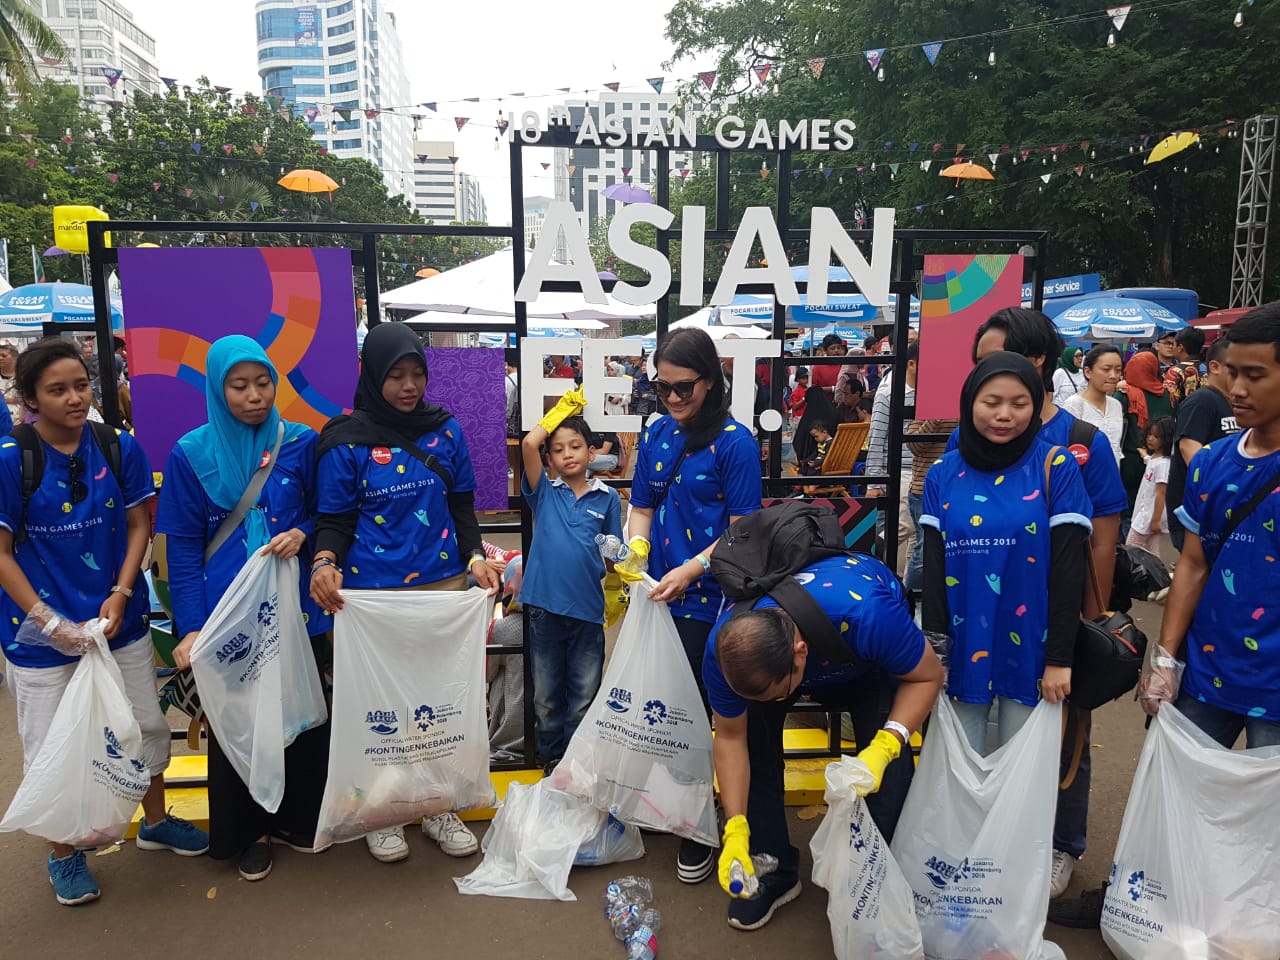 Asian Games Kelar, Danone Aqua Terus Sebar Semangat Kebaikan